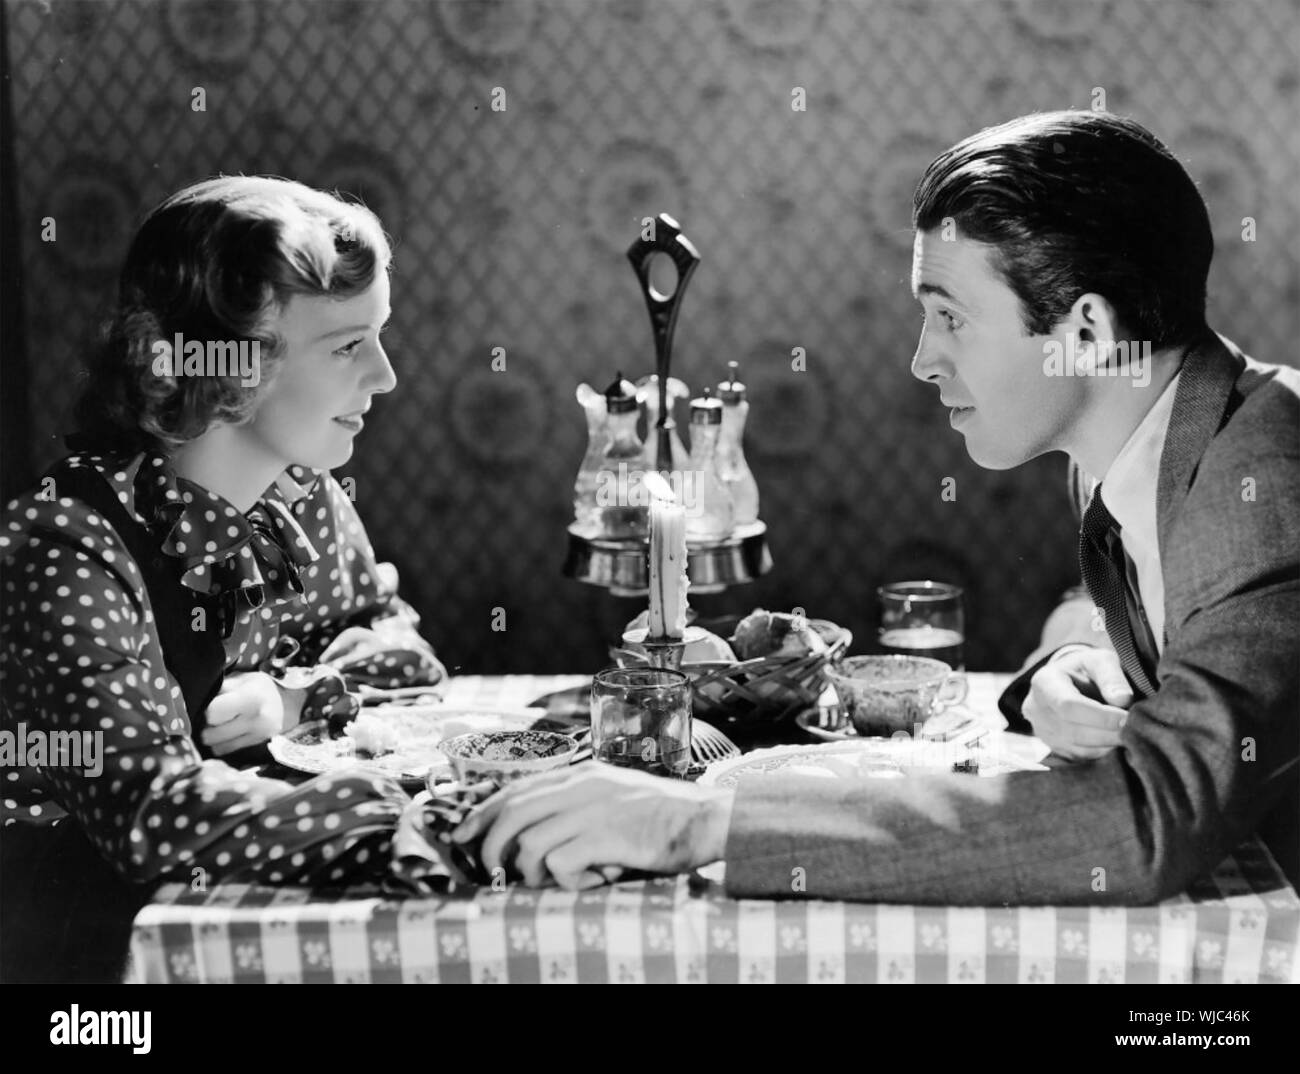 La TIENDA DE LA ESQUINA DE 1940 películas de MGM con Margaret Sullivan y James Stewart Foto de stock